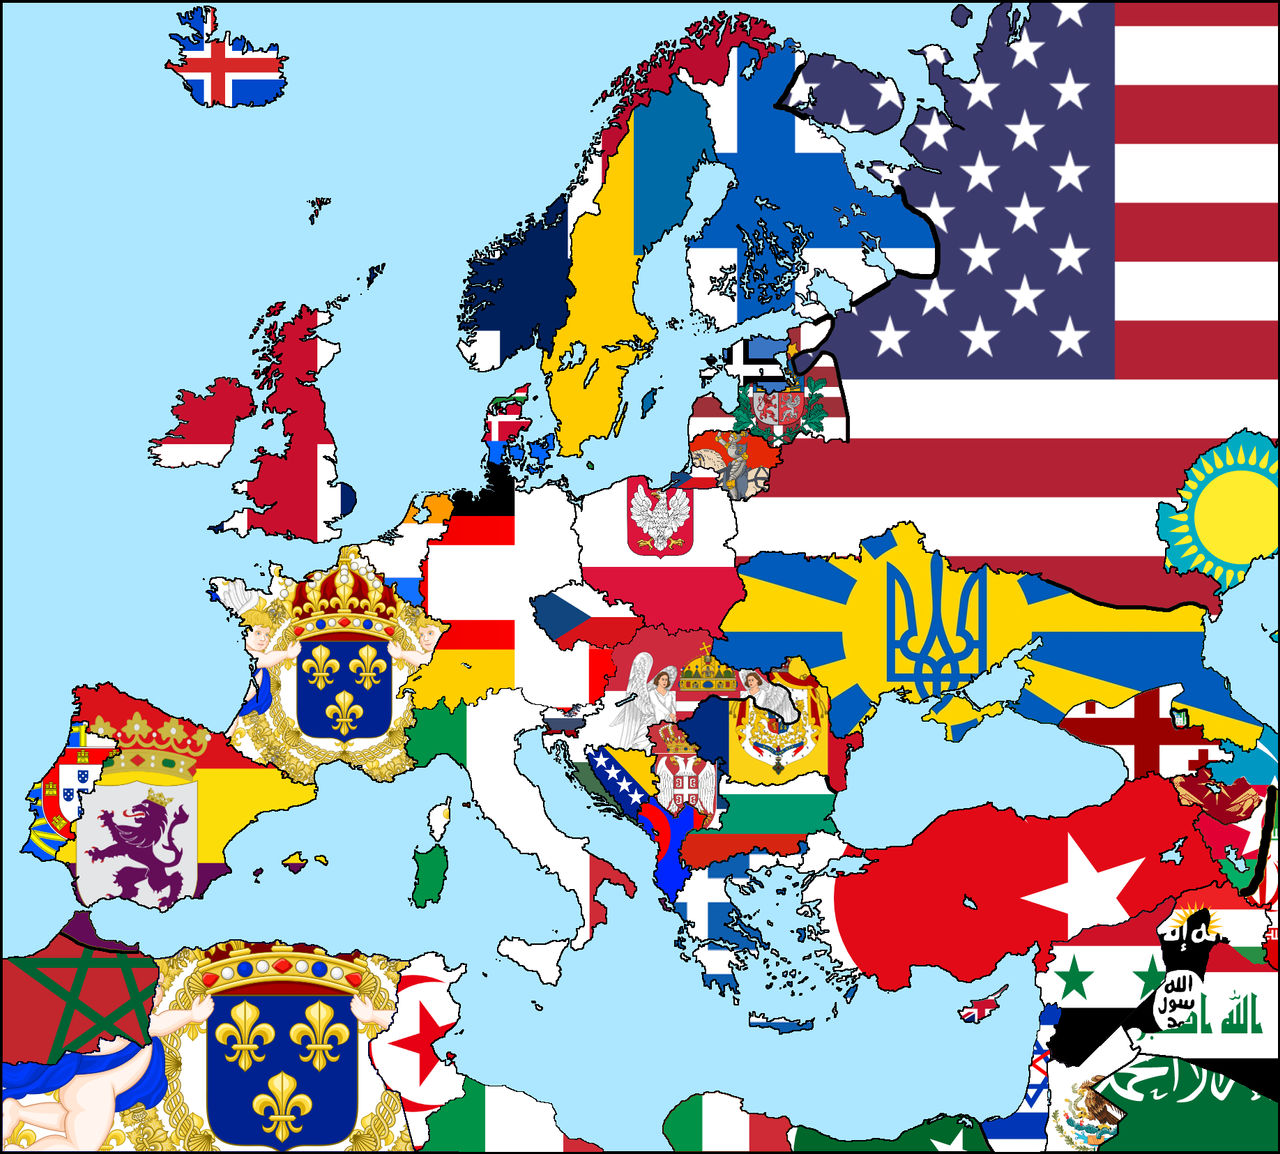 Cold War Europe Digital flag map by Gabokoopa on DeviantArt